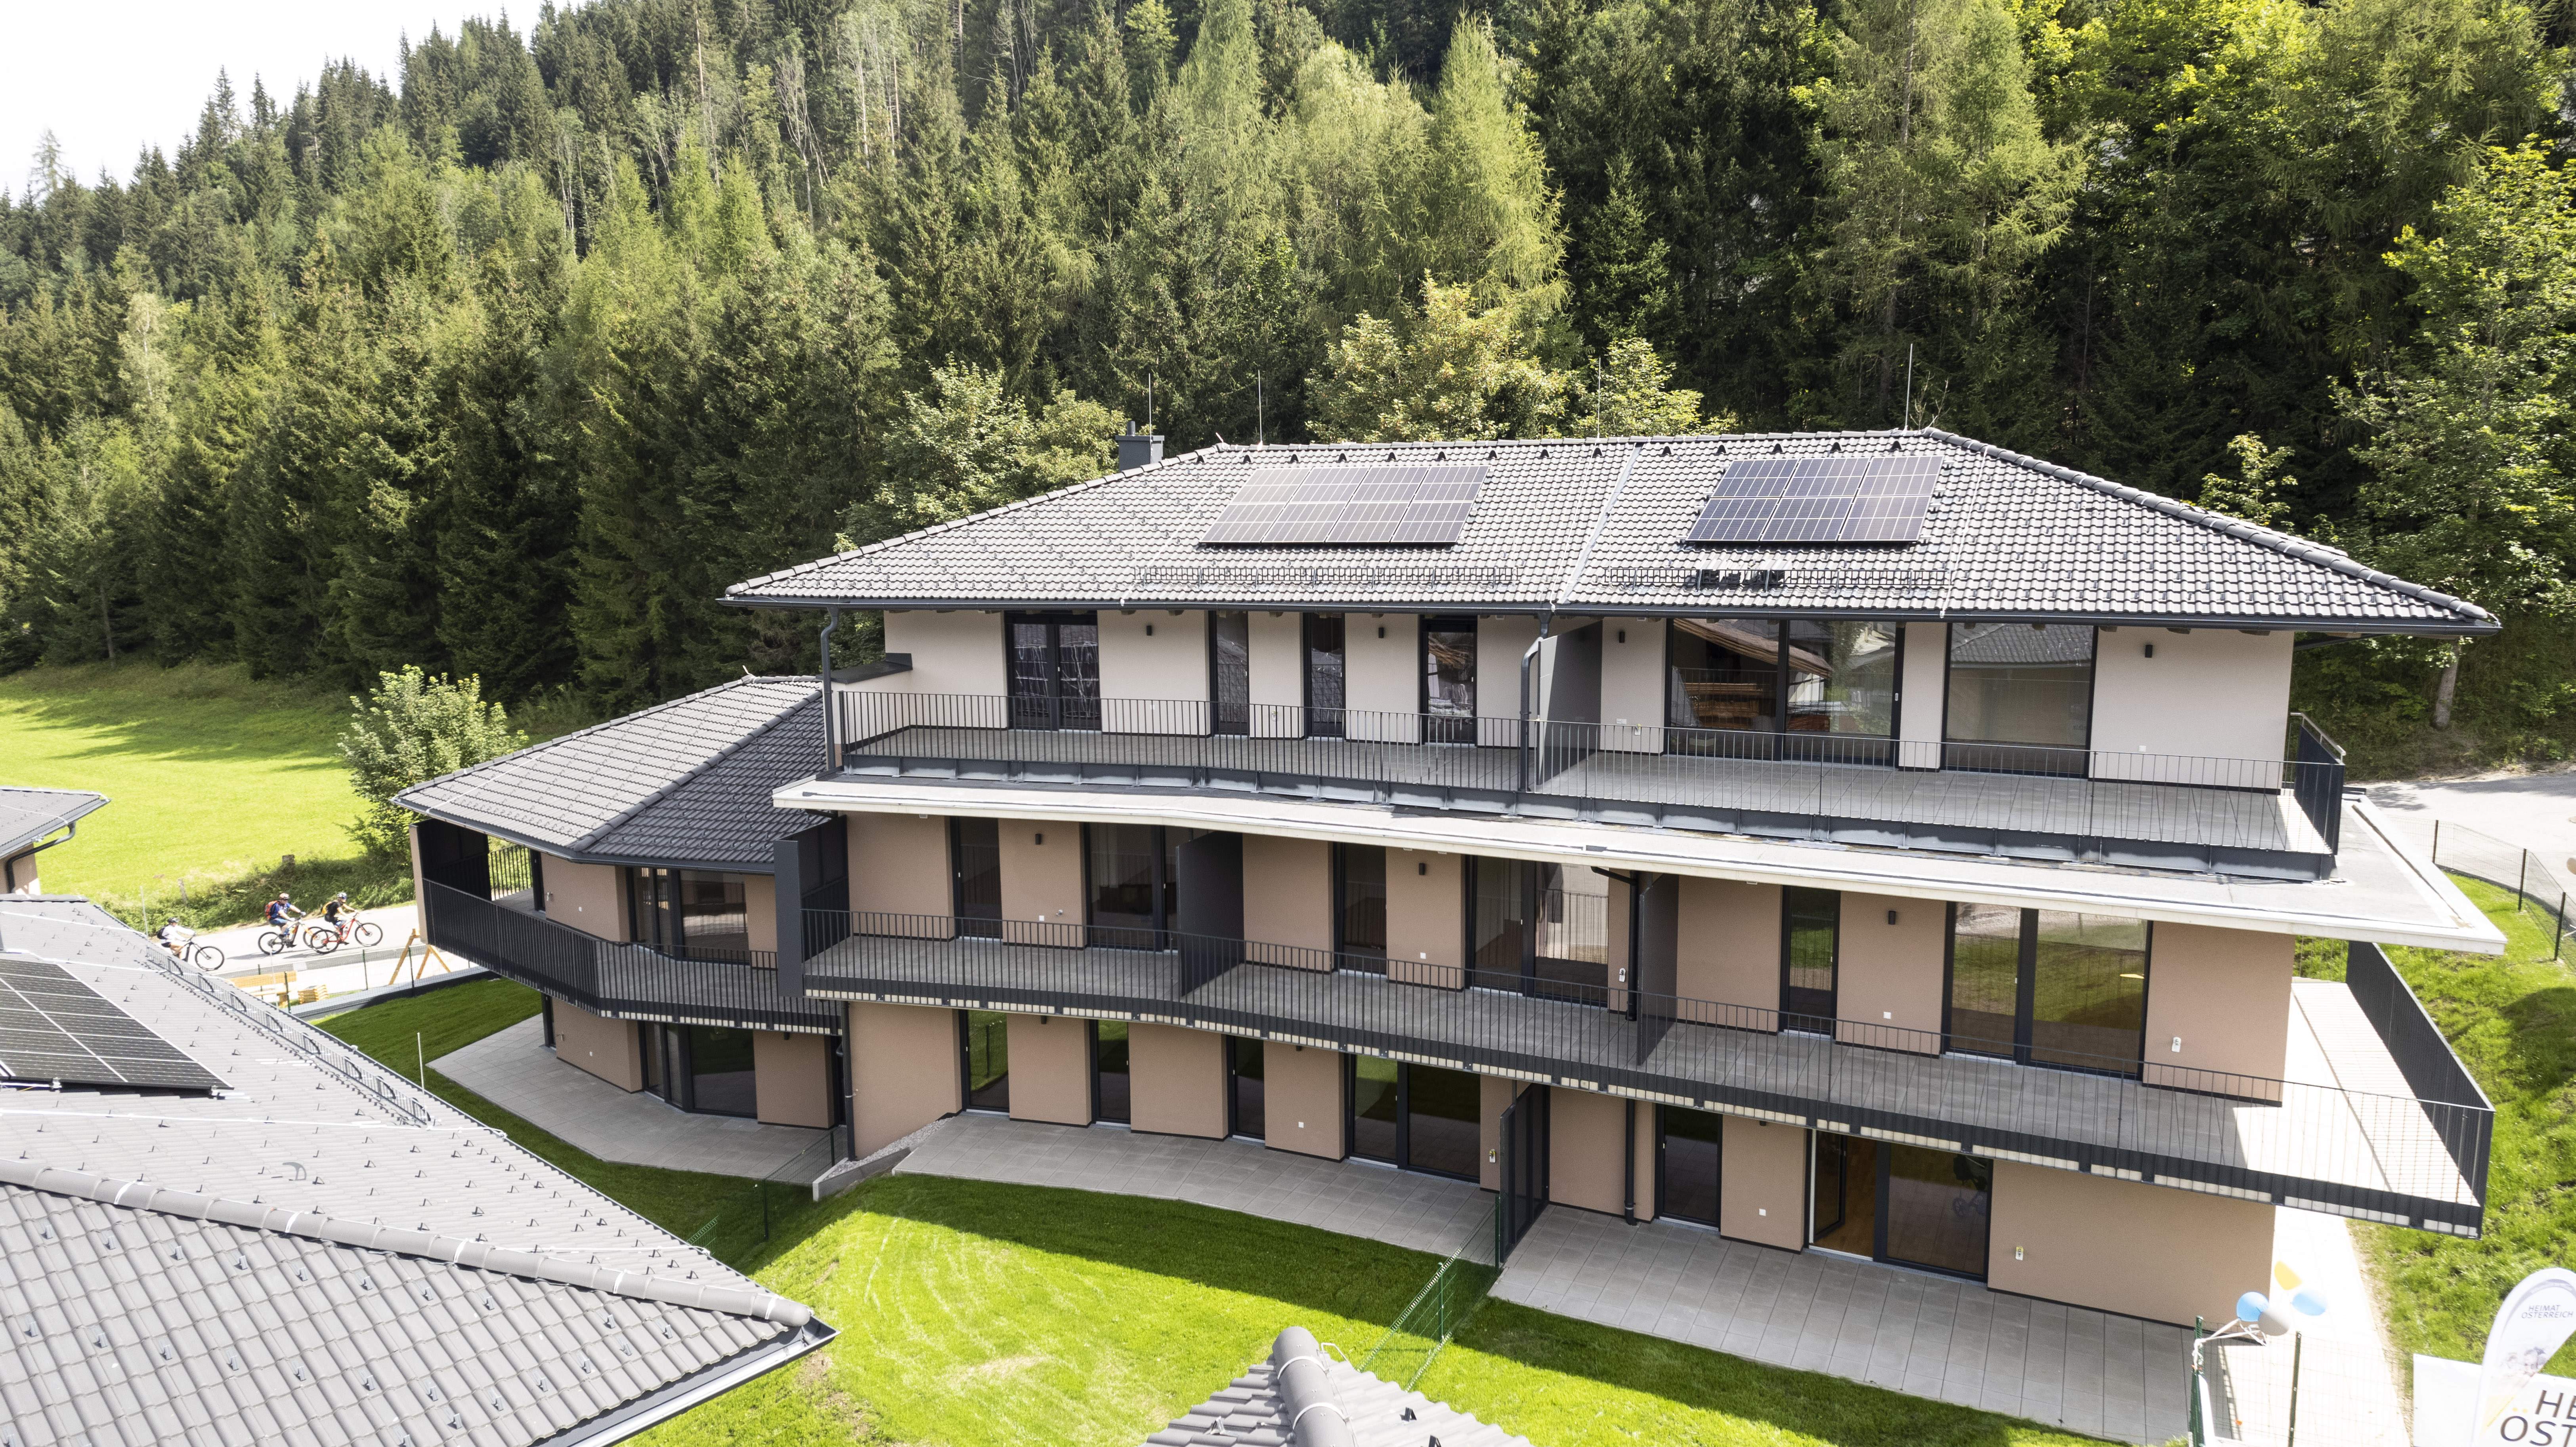 Bauprojekt "Sonnenhang in Flachau" fertig gestellt